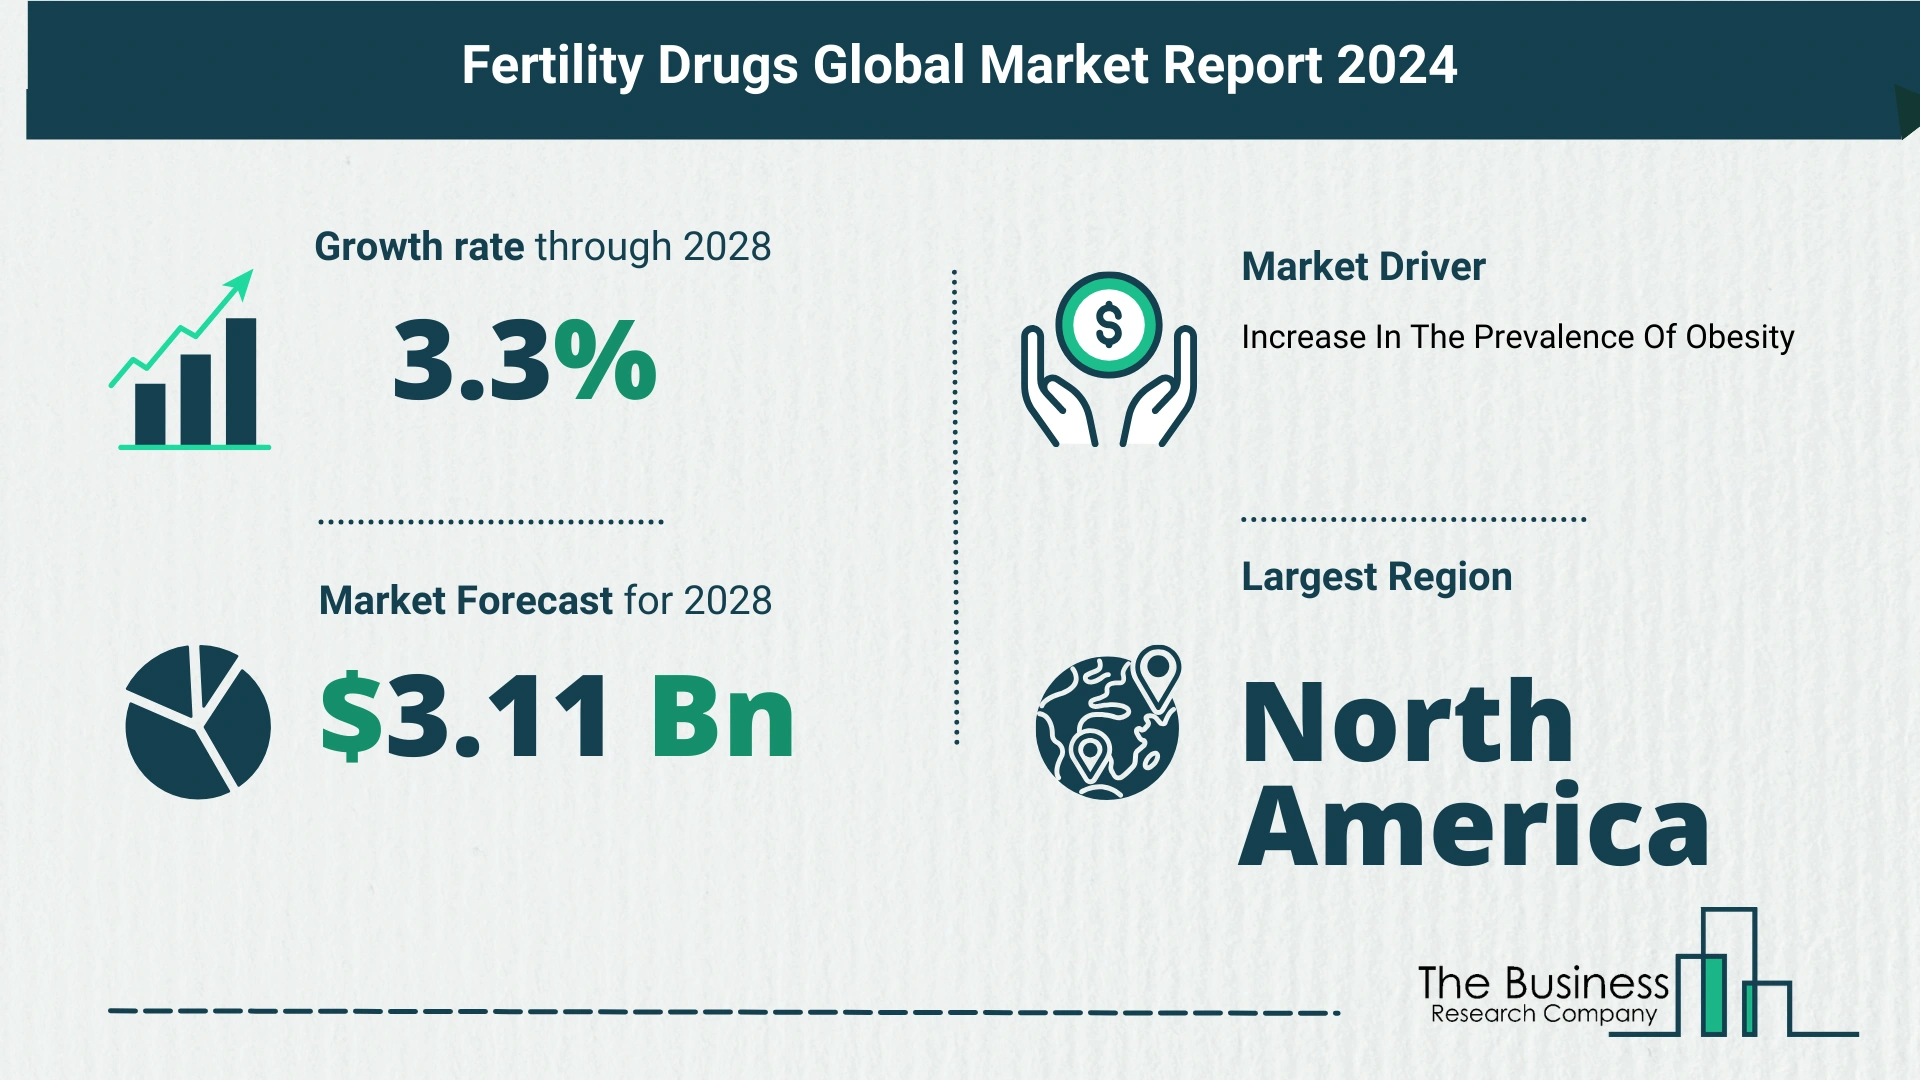 Global Fertility Drugs Market Size